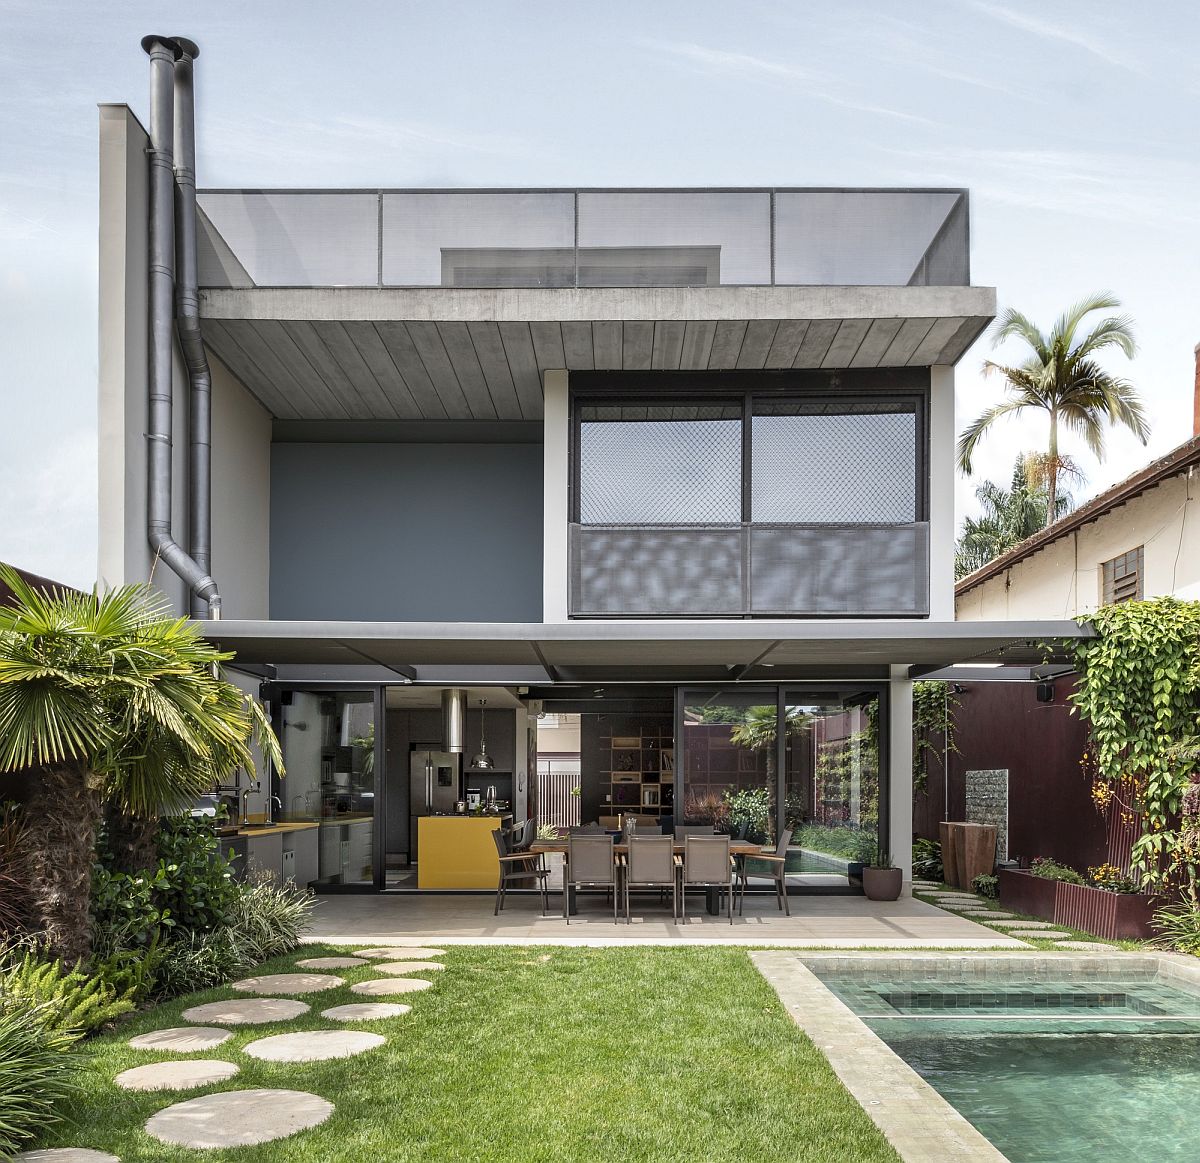 Spacious modern house in Alto da Boa Vista neighborhood of Rio with a large garden